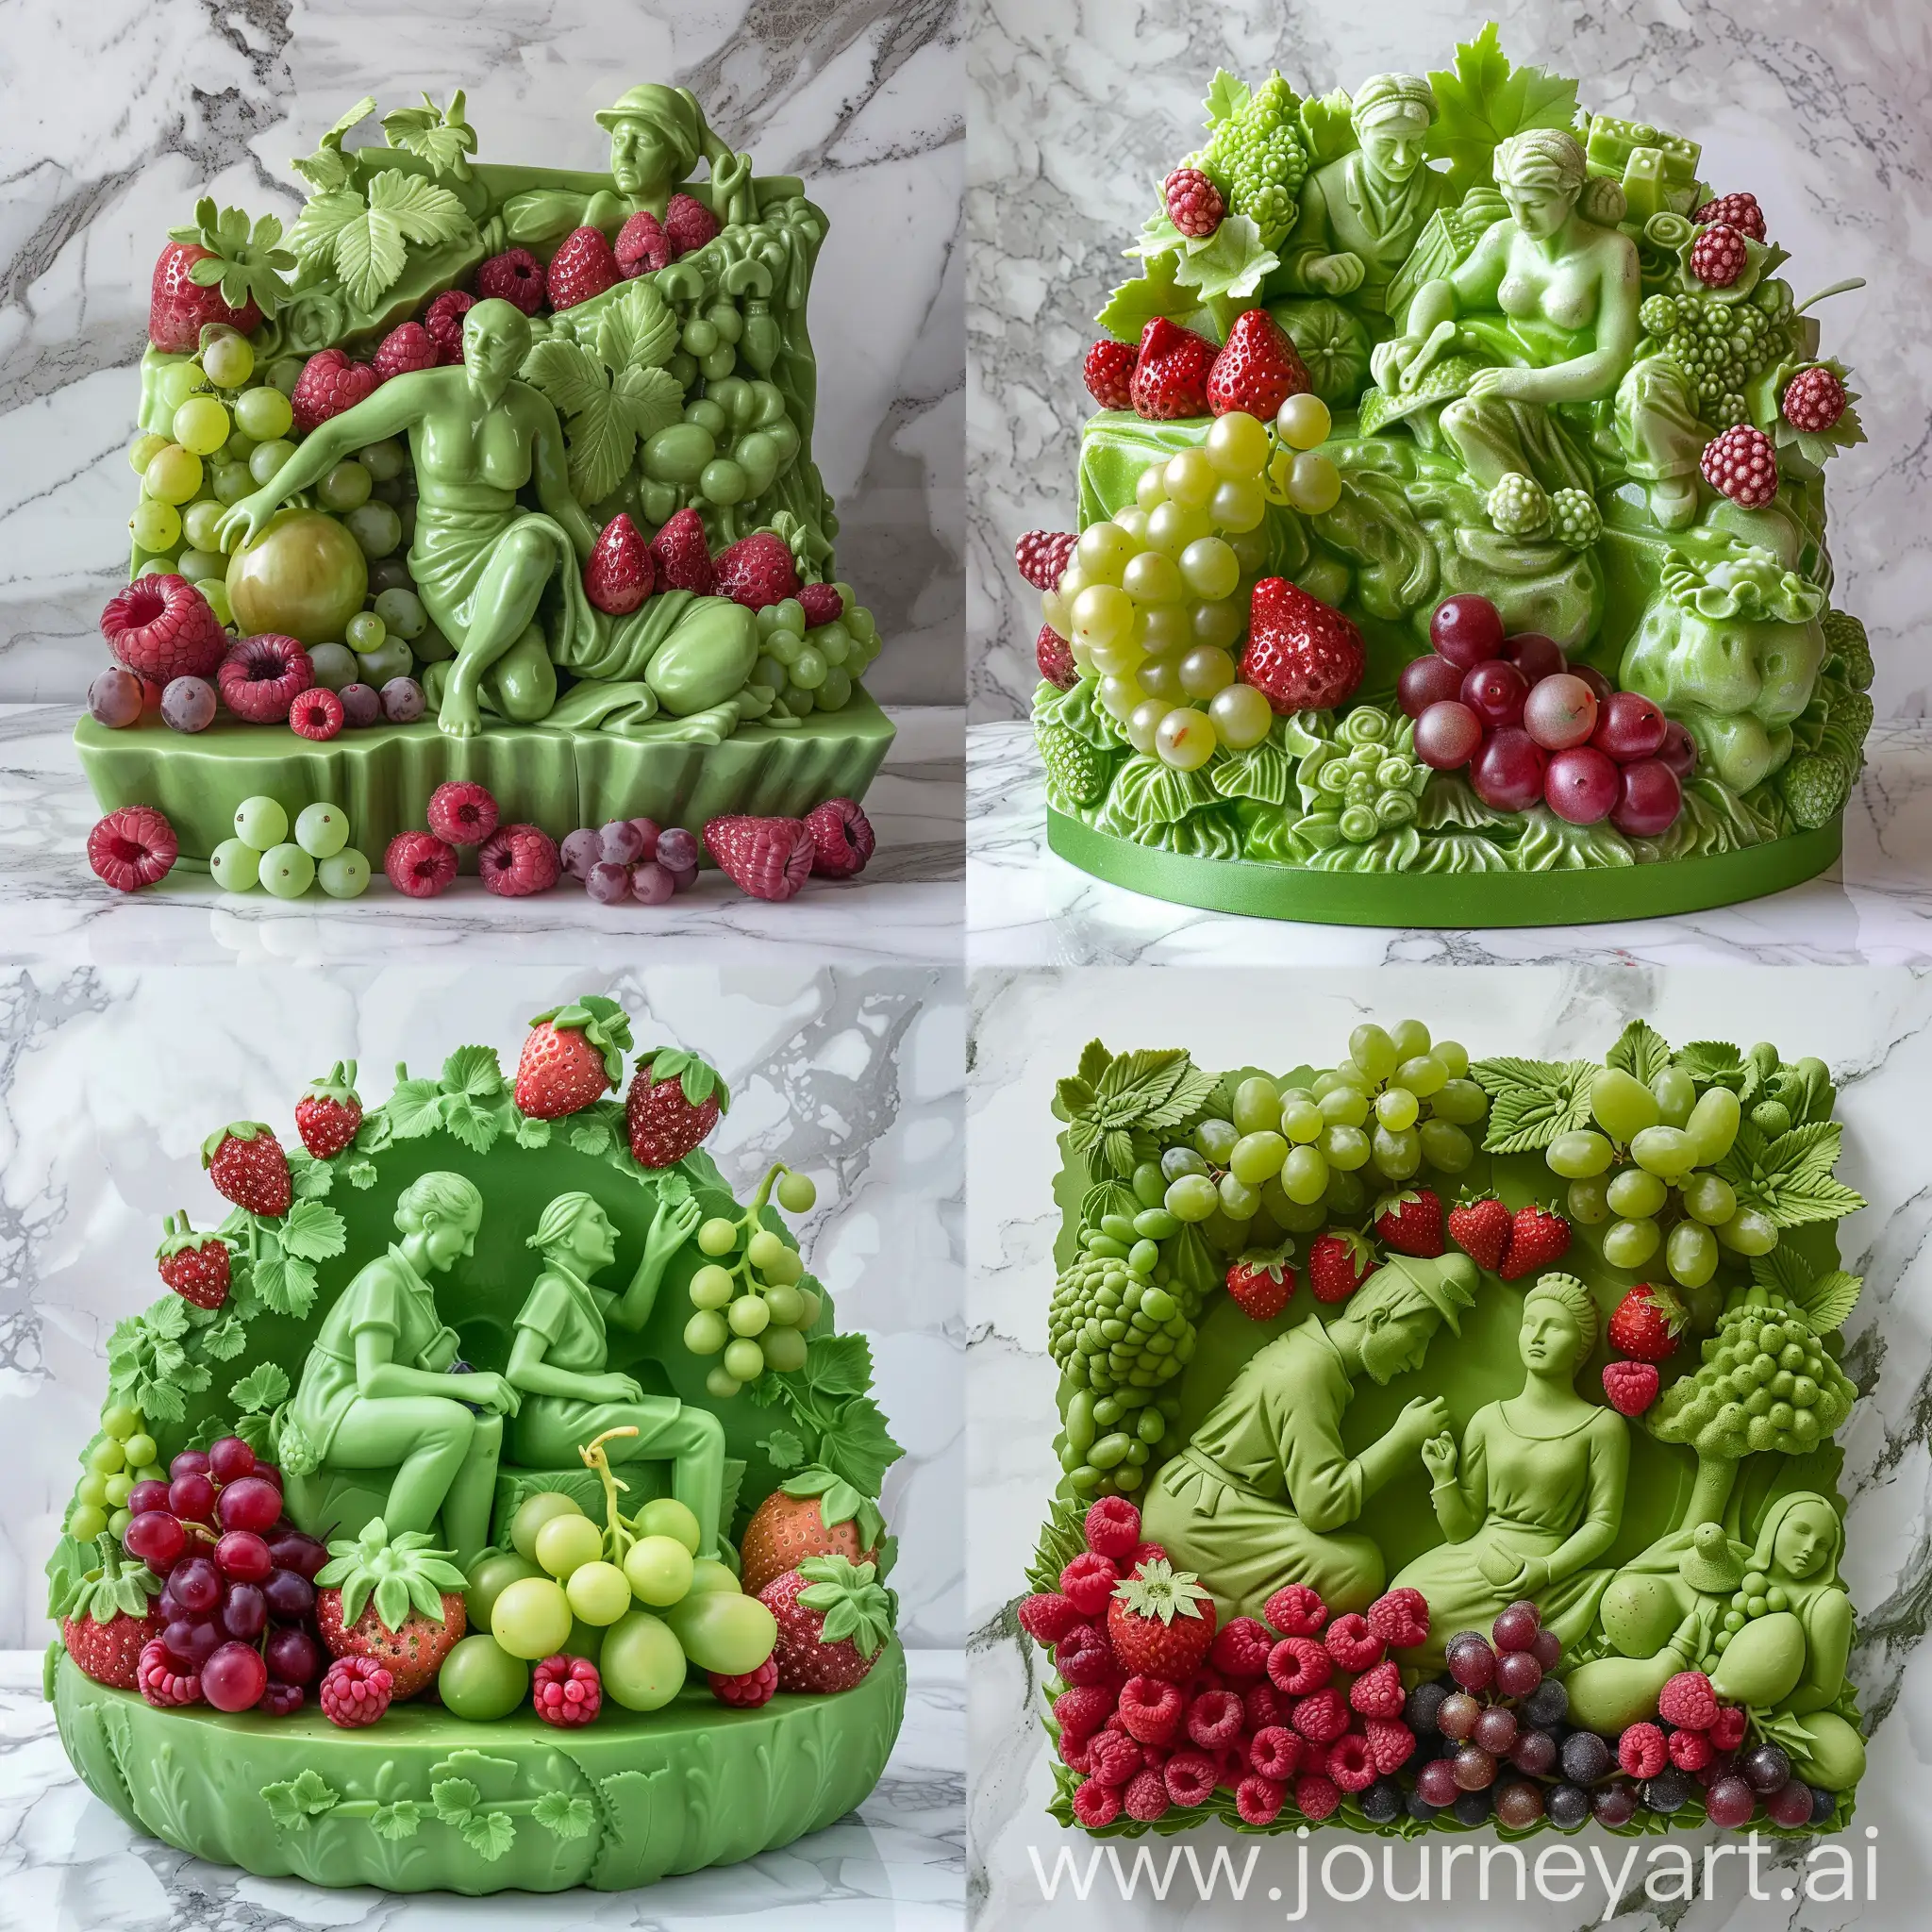 скульптура "Рабочий и Колхозница" в виде зеленого торта с клубникой, малиной и виноградом и другими ягодами. на фоне мрамор